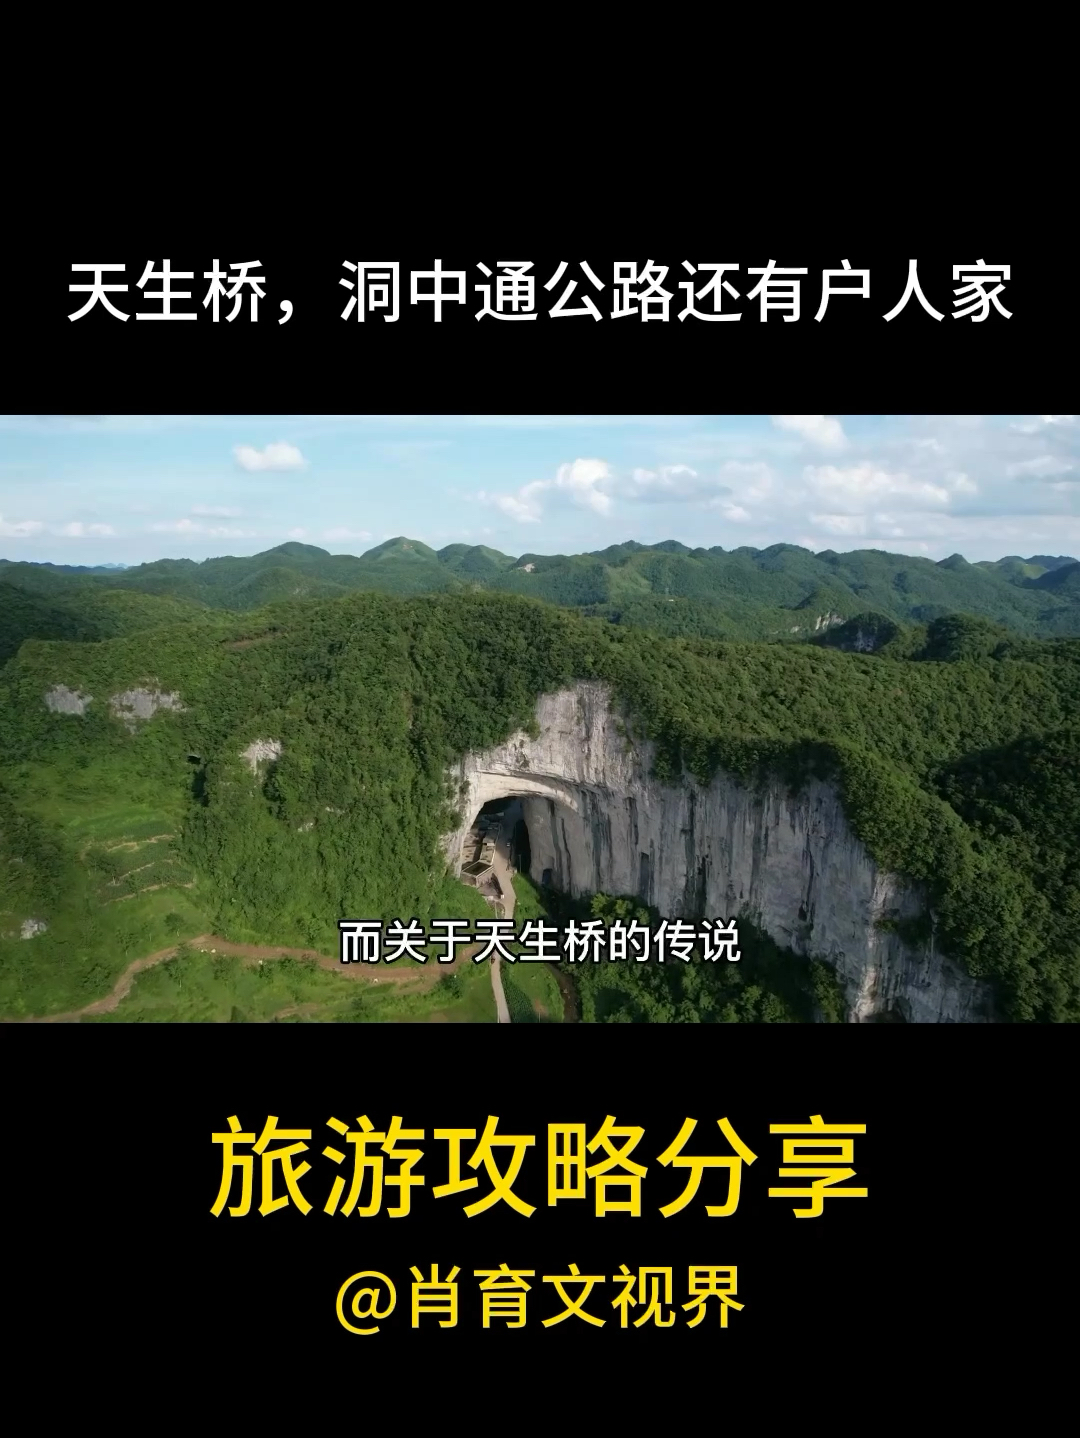 穿越贵州天生桥洞穴，发现通往奇妙生活的神秘公路！